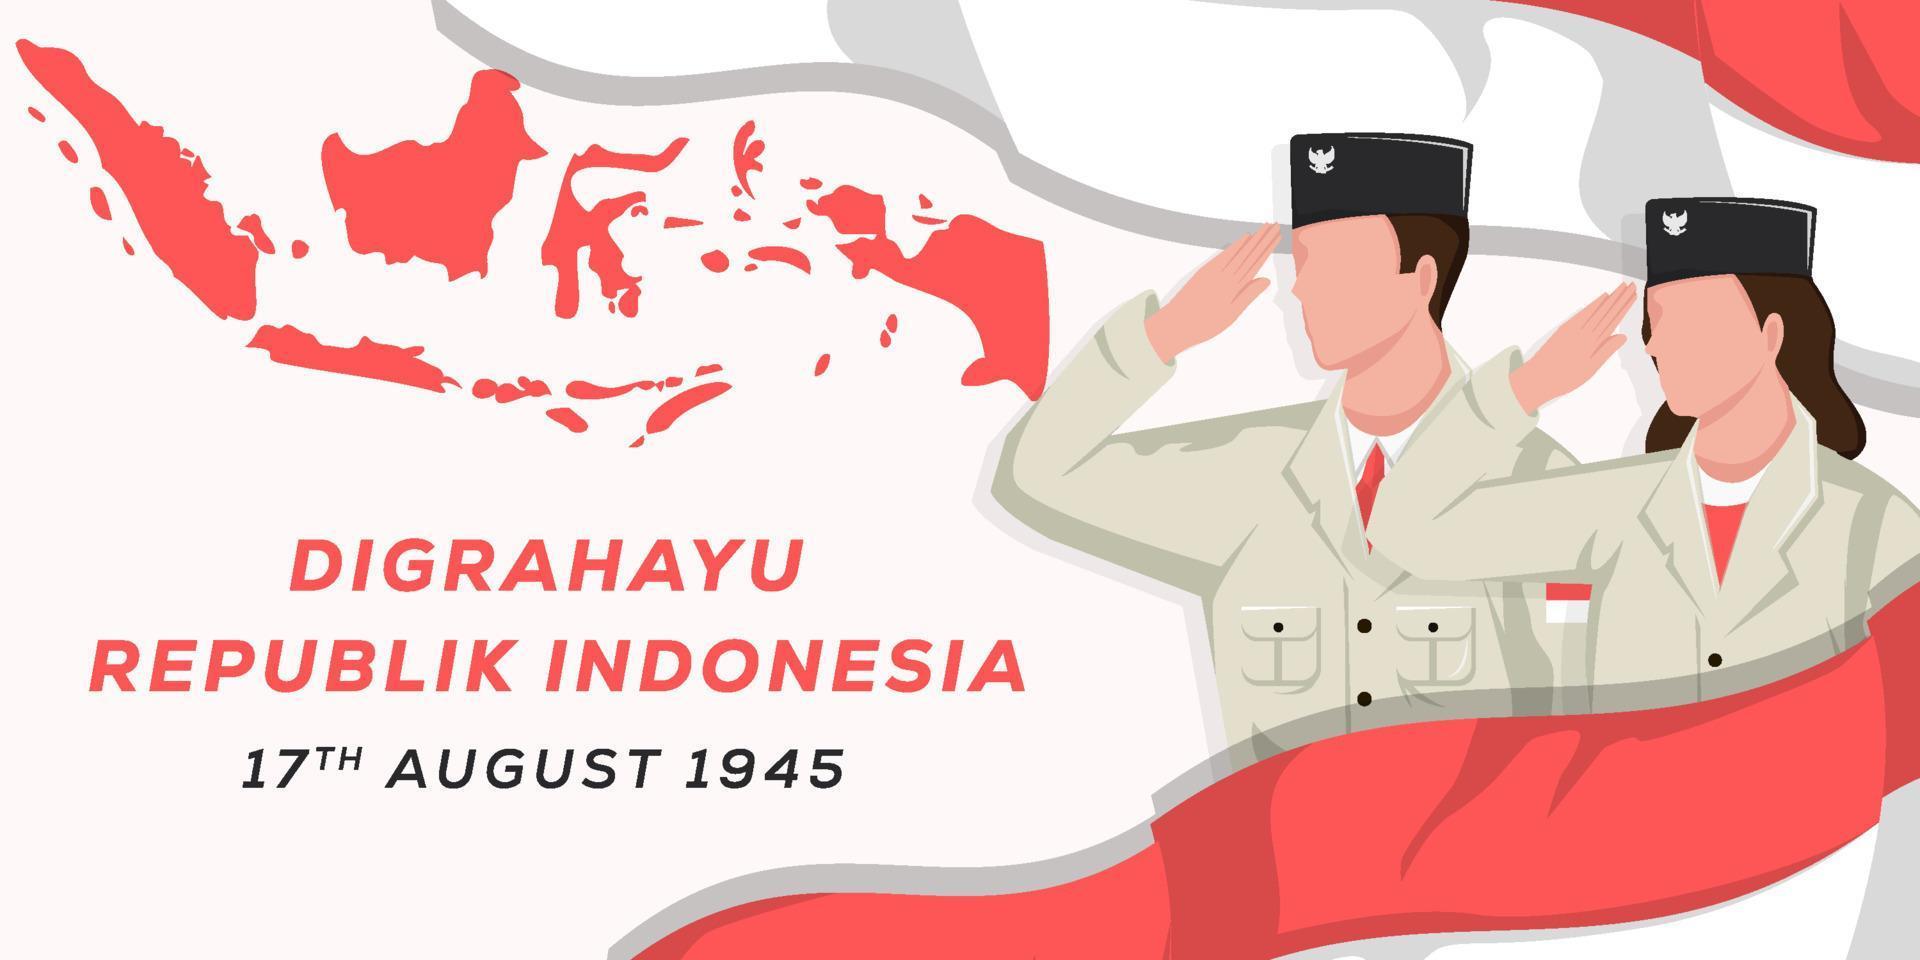 dia da independência da indonésia plana 17 de agosto ilustração de fundo com homens e mulheres saudando vetor